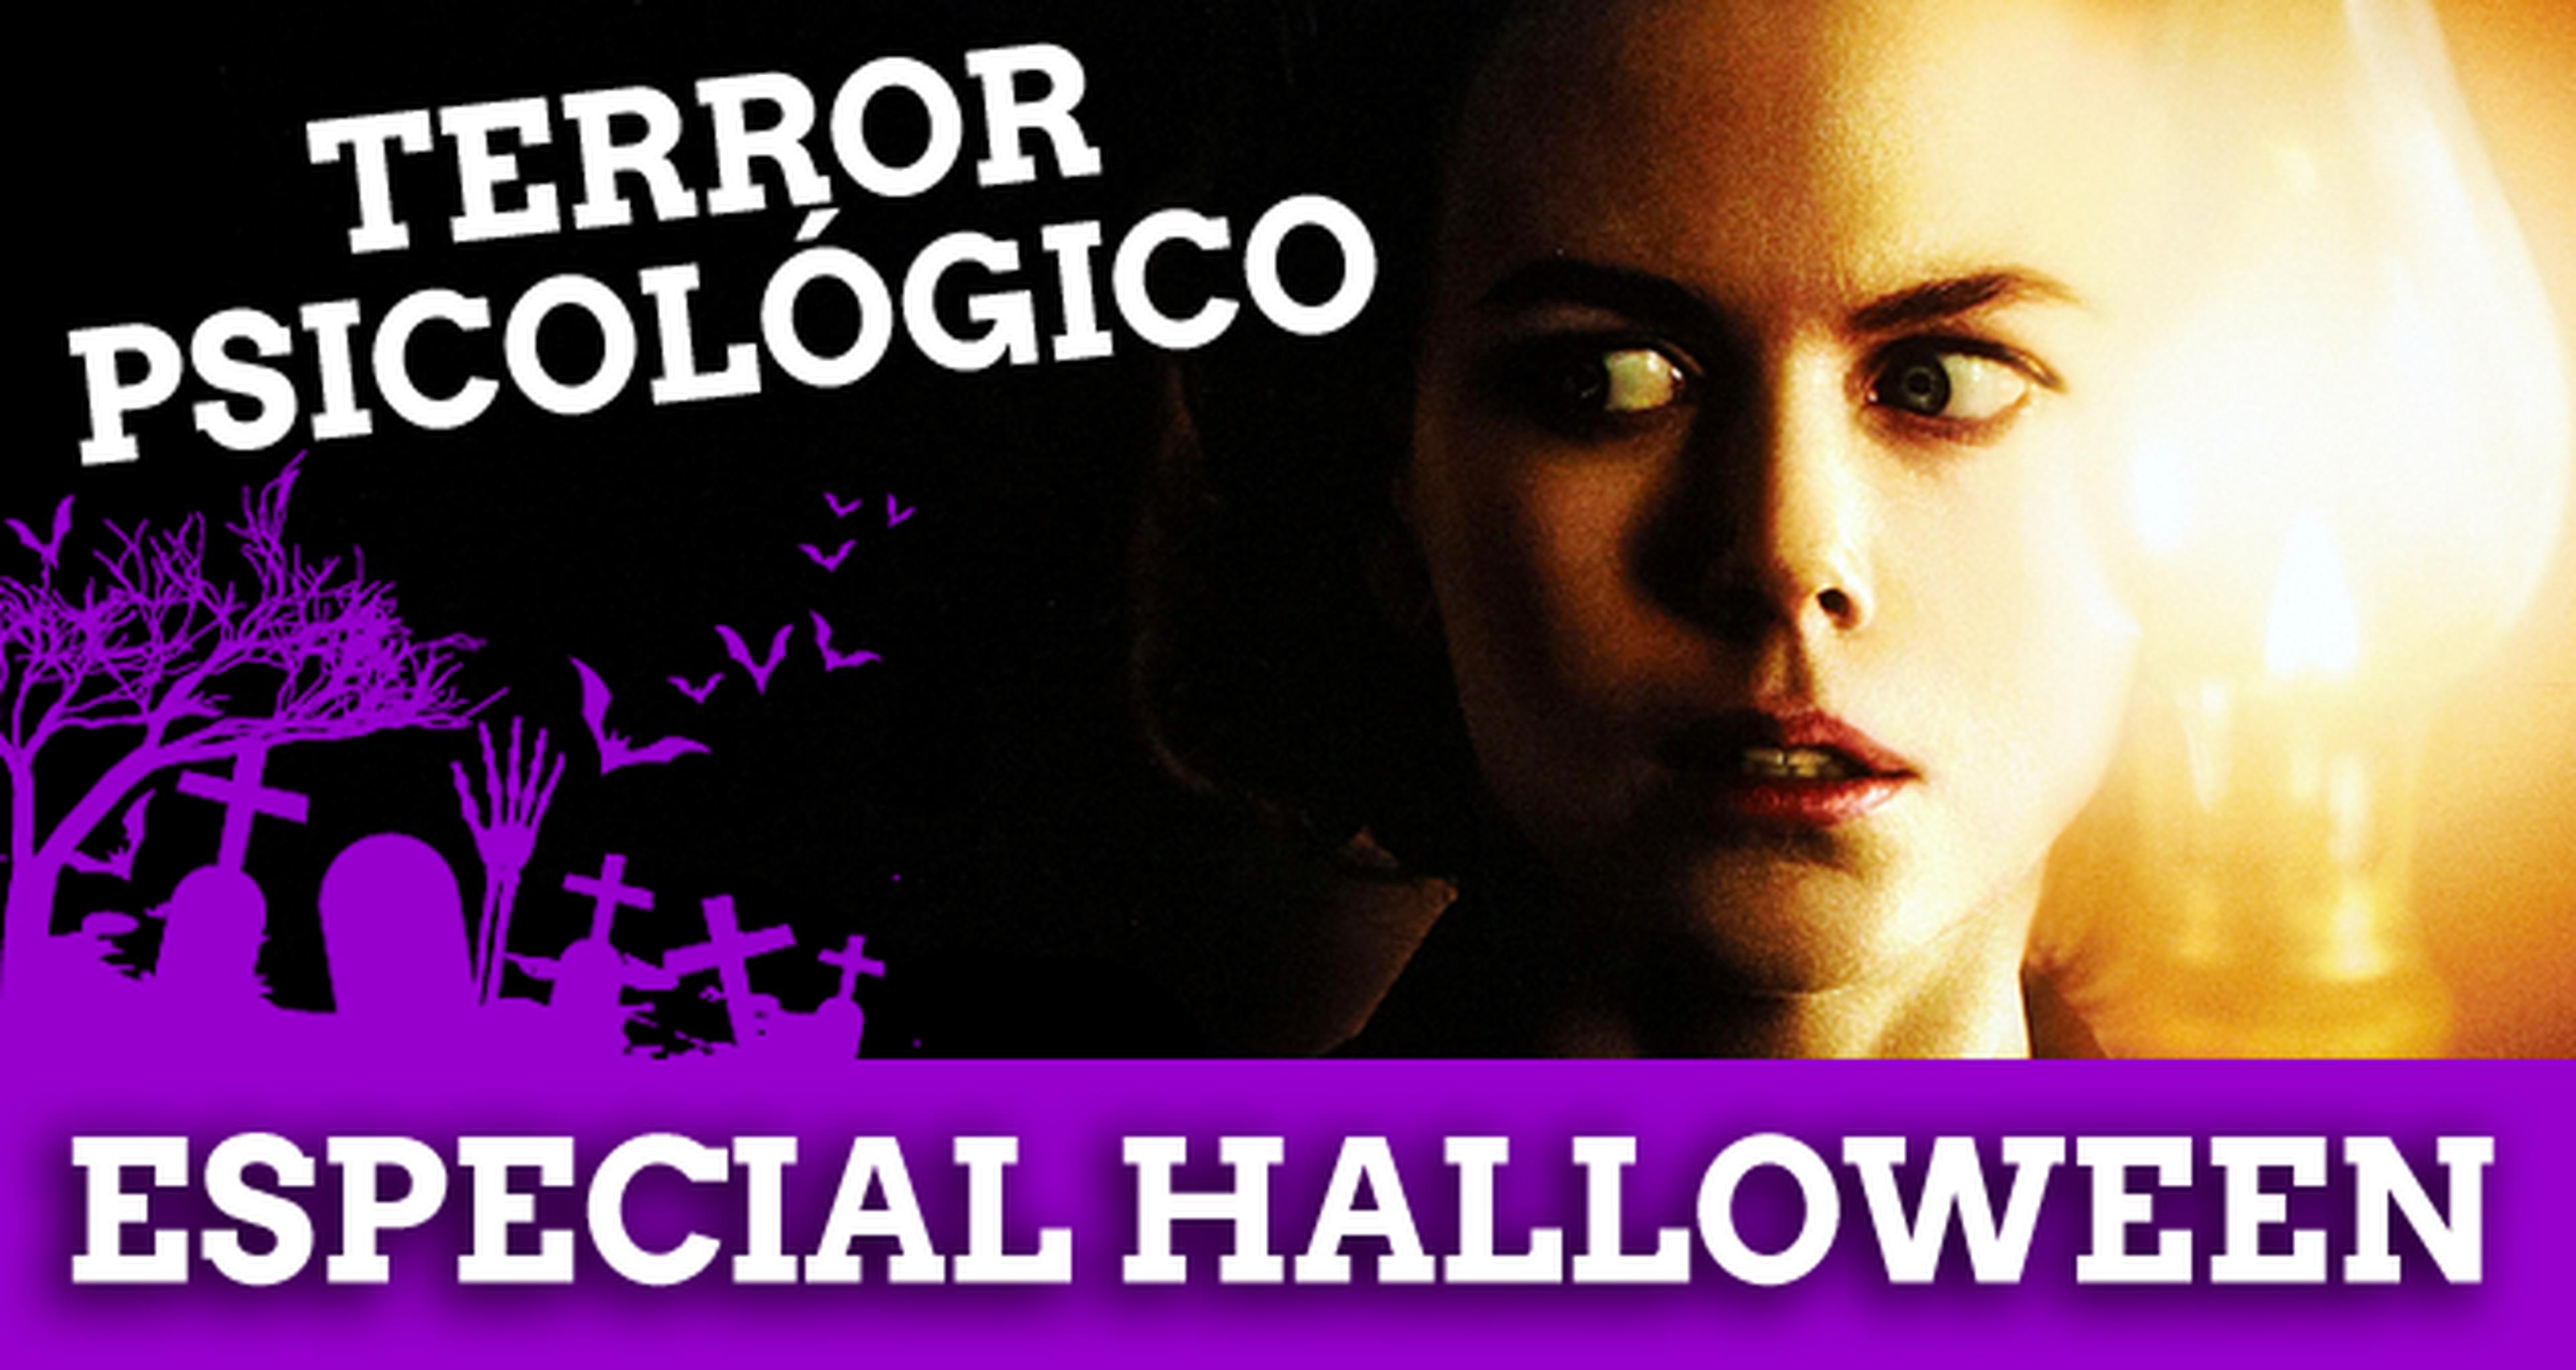 Especial Halloween: Terror psicológico